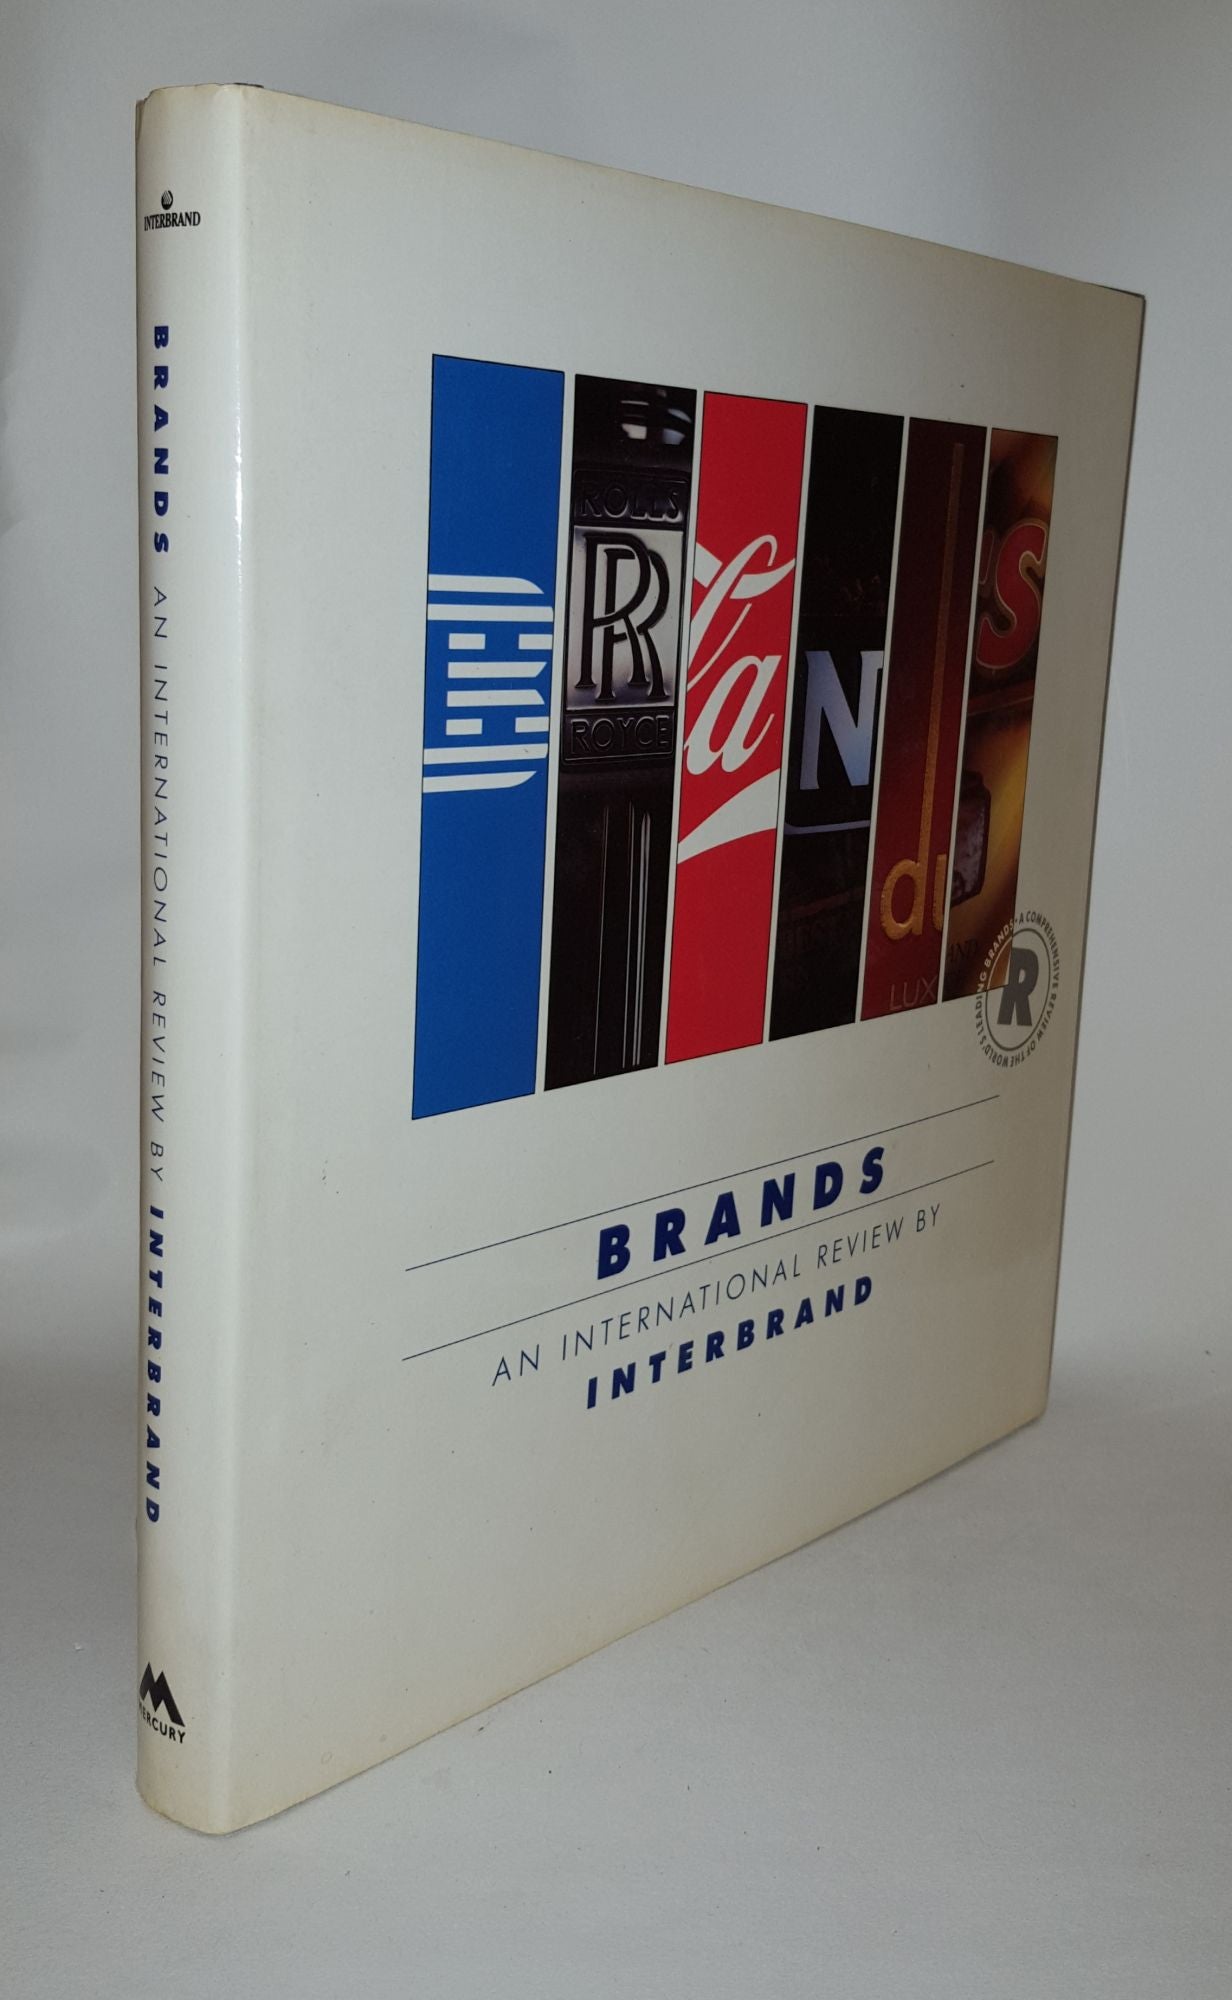 Interbrand - Brands an International Review